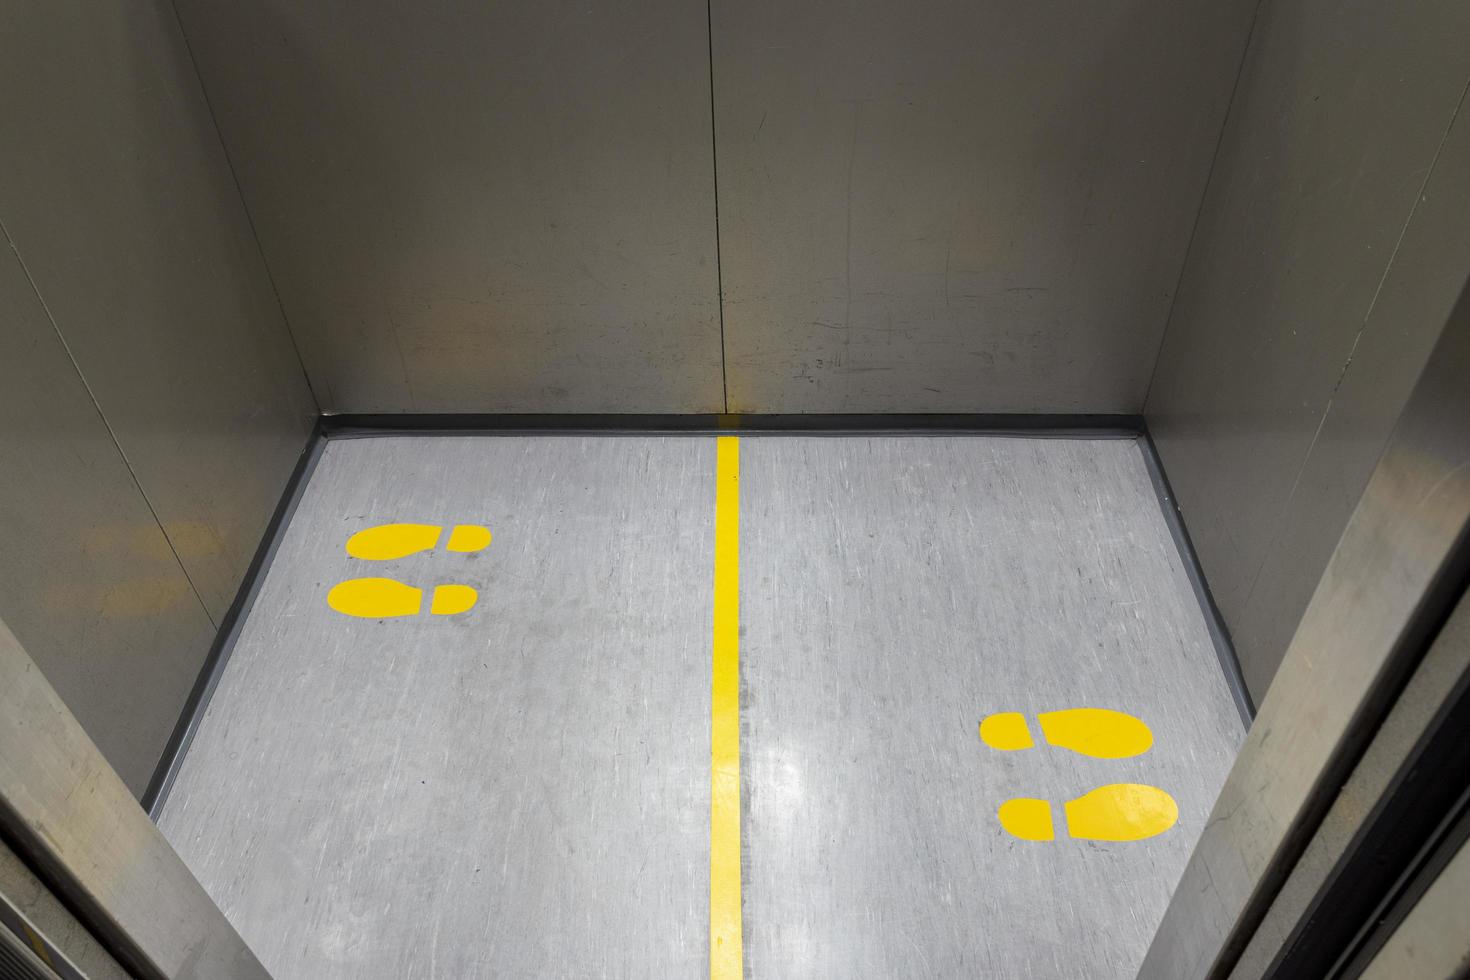 distanciamento social para covid-19 com placa de pegada amarela em elevador público foto